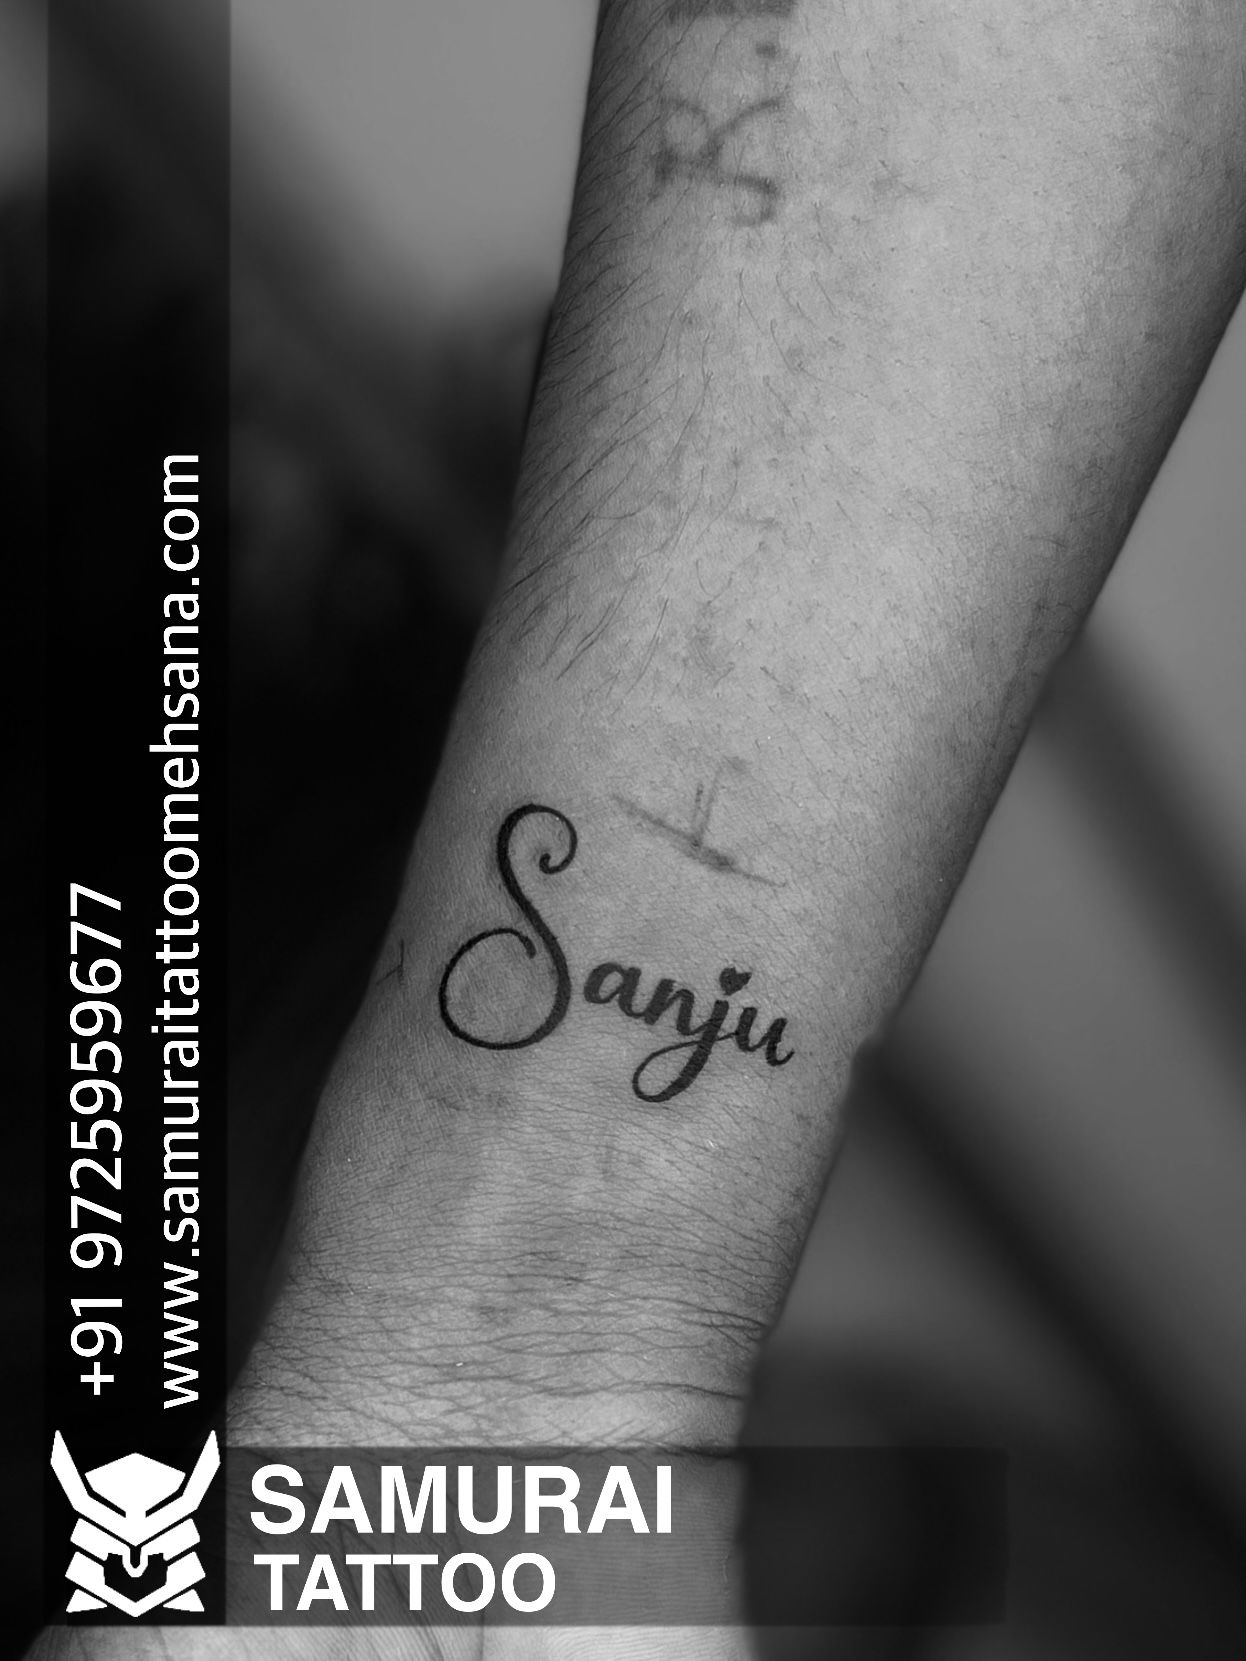 Life star rk tattoo indore ————————————————— Tattoo.art.by.rohitgoud  @life.star.r.k.tattoo.indore Th... | Instagram